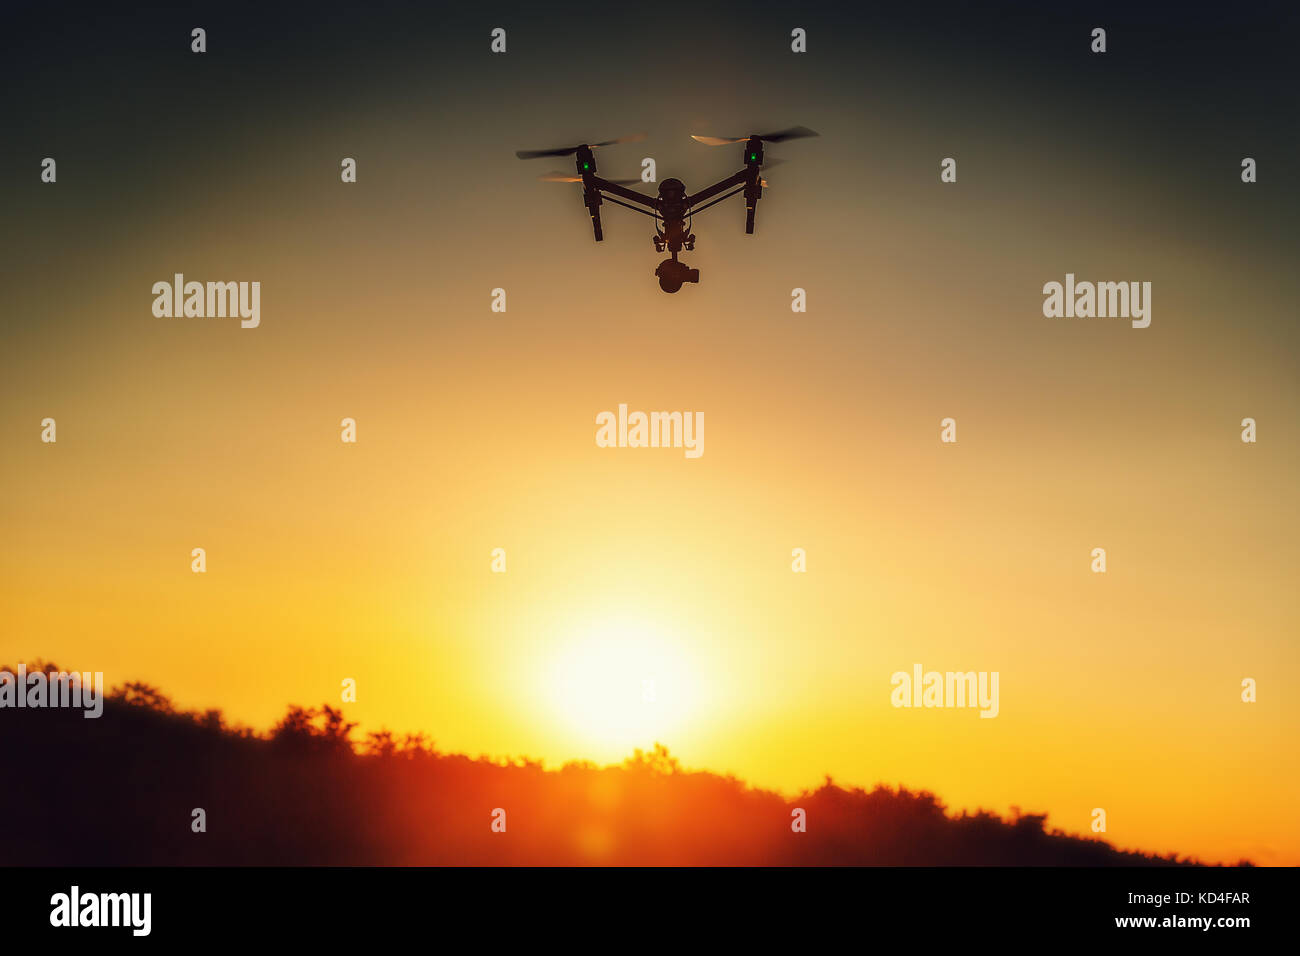 Varna, Bulgarie - 09 juillet,2016: Image de DJI inspire 1 Pro drone UAV quadcopter qui enregistre 4K vidéos et 16MP images fixes et est contrôlé par fil Banque D'Images